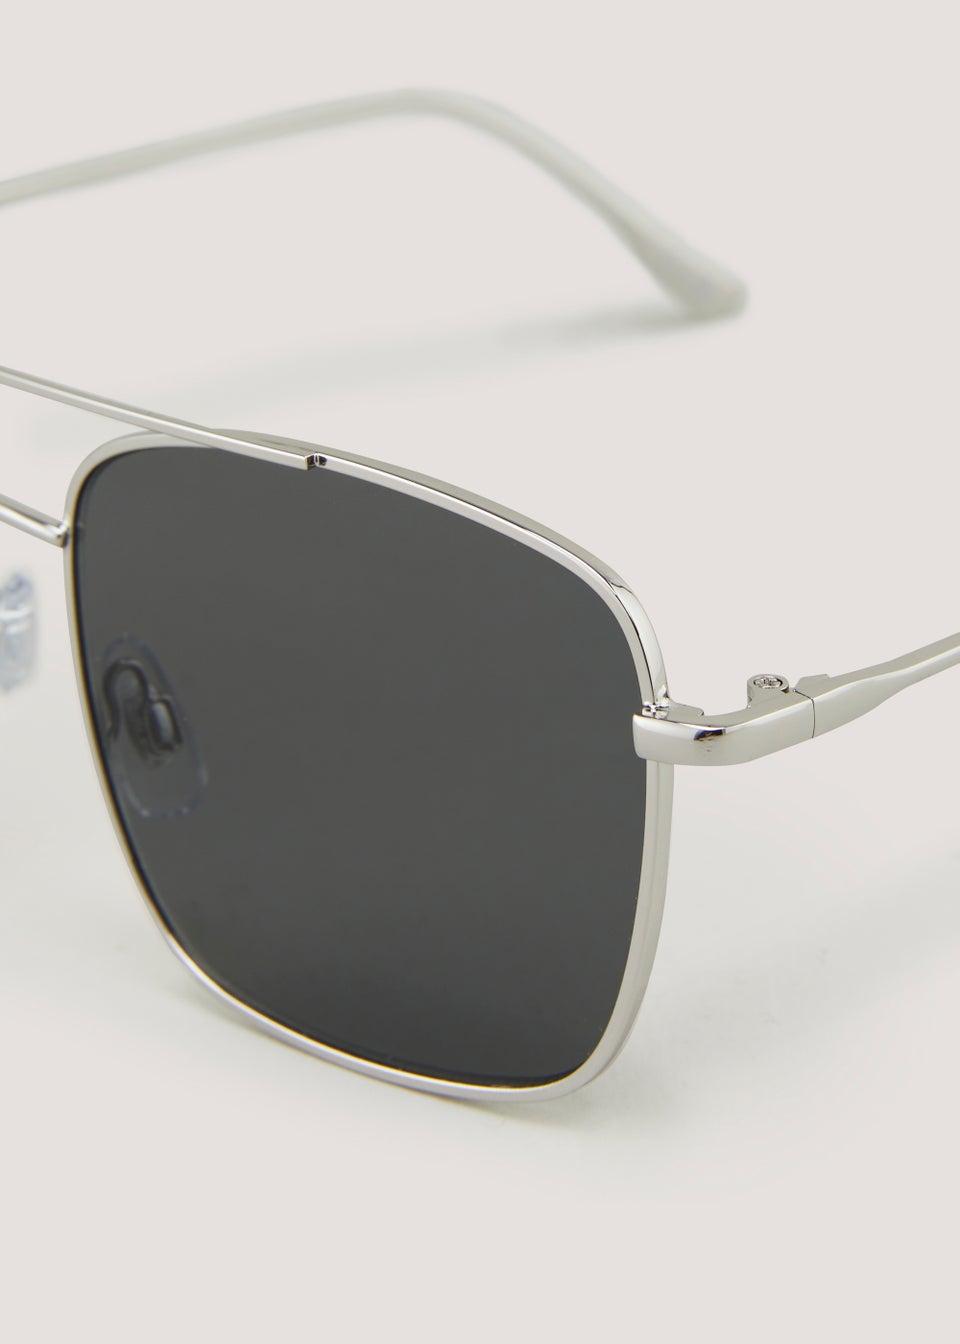 Silver Aviator Square Sunglasses